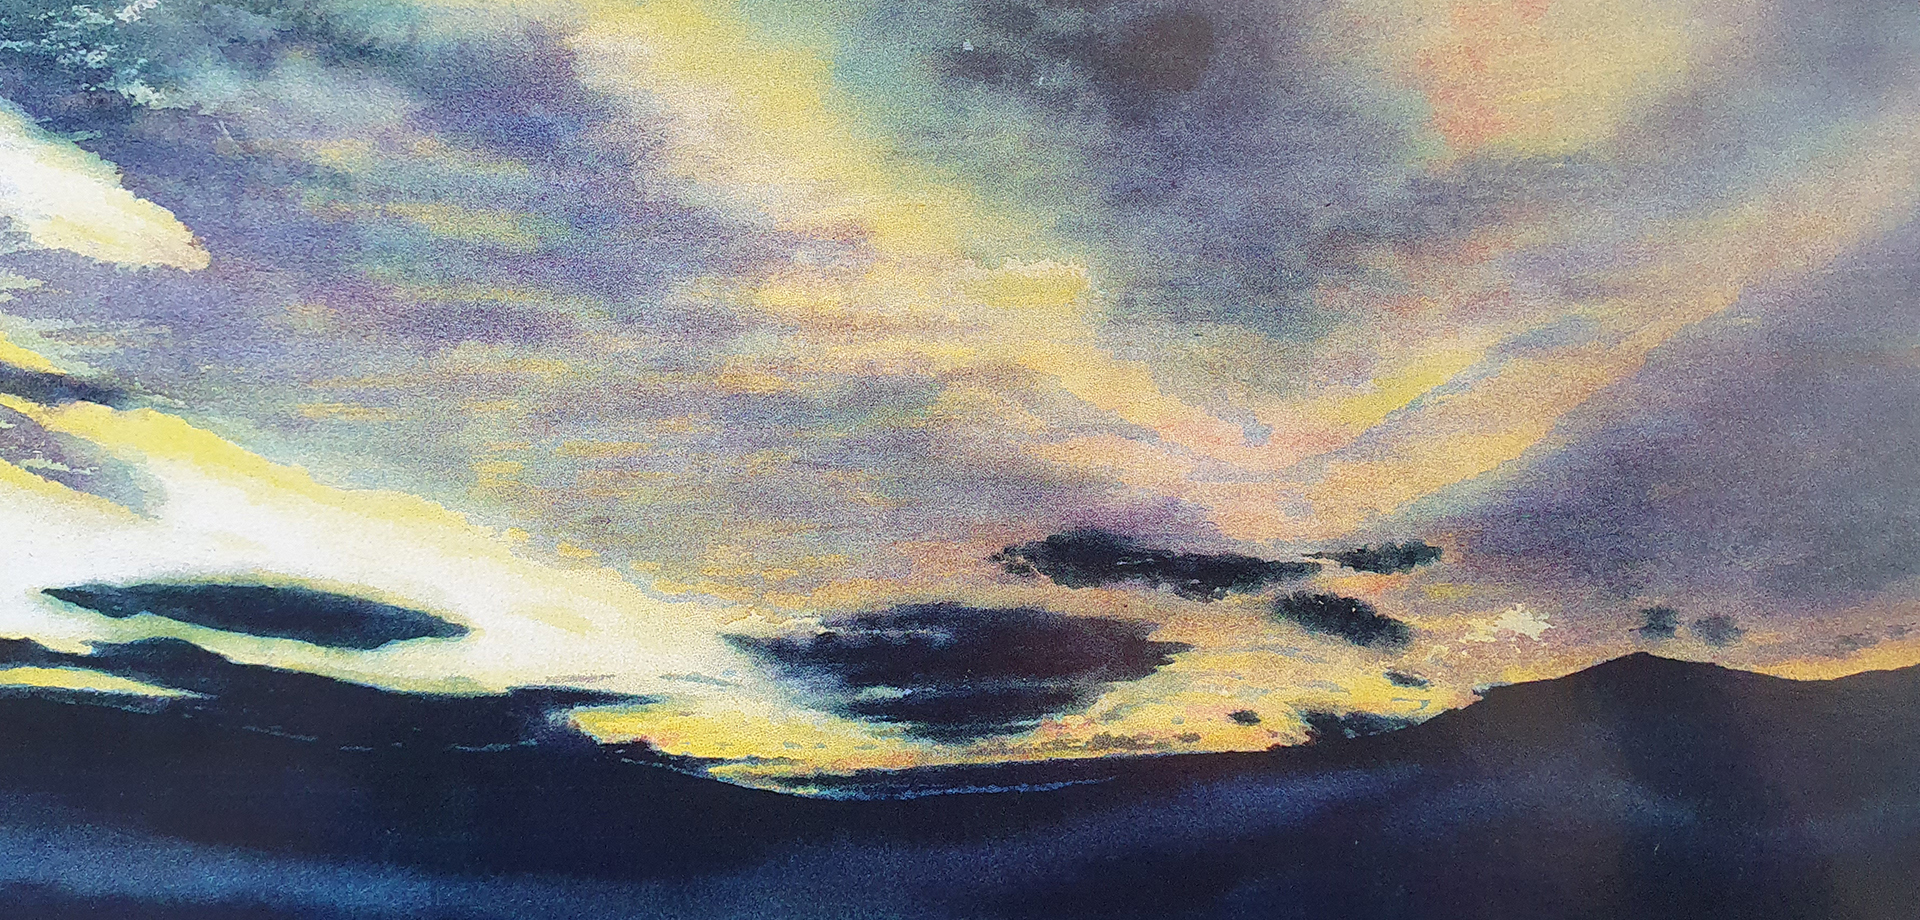 Sunrise painting: Radical Horizons